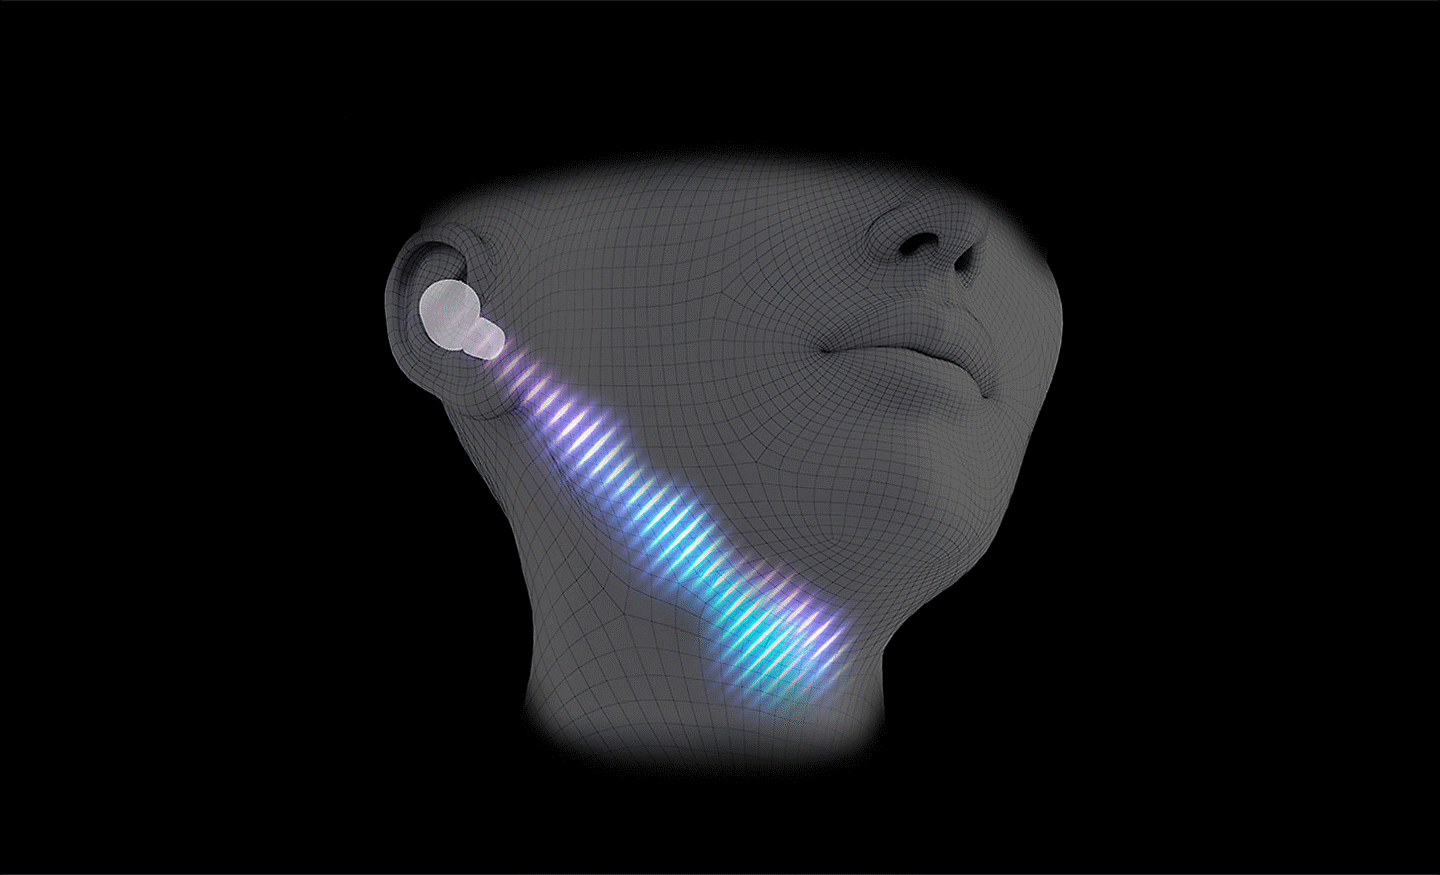 Image de synthèse d'une tête portant des écouteurs et une ligne d'ondes sonores en diagonale allant de l'oreille à la gorge